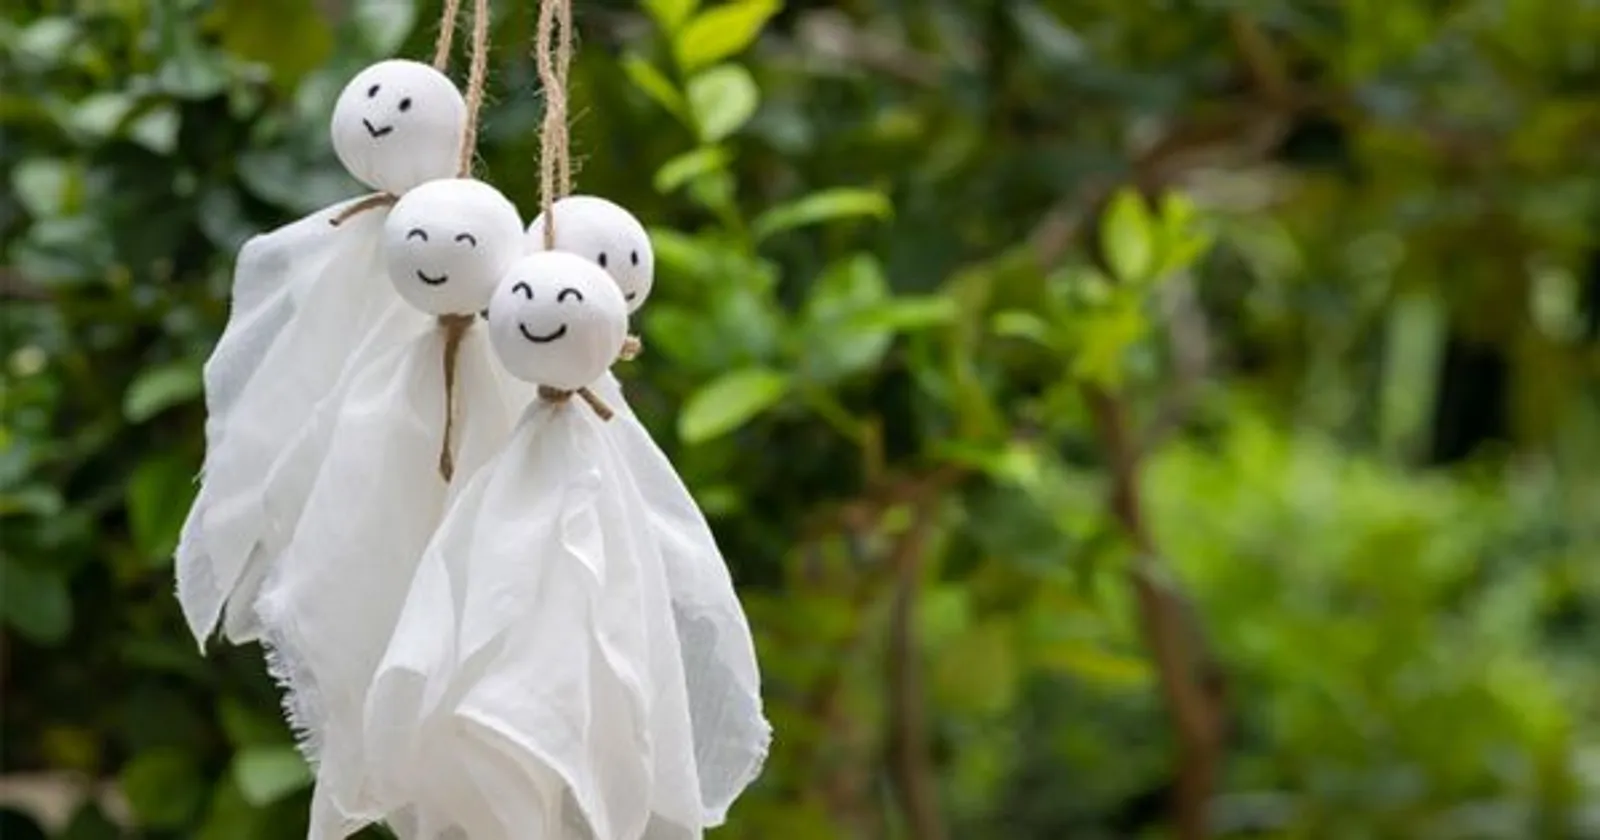 Teru-Teru Bozu, Penangkal Hujan Asal Jepang yang Mirip Boneka Hantu